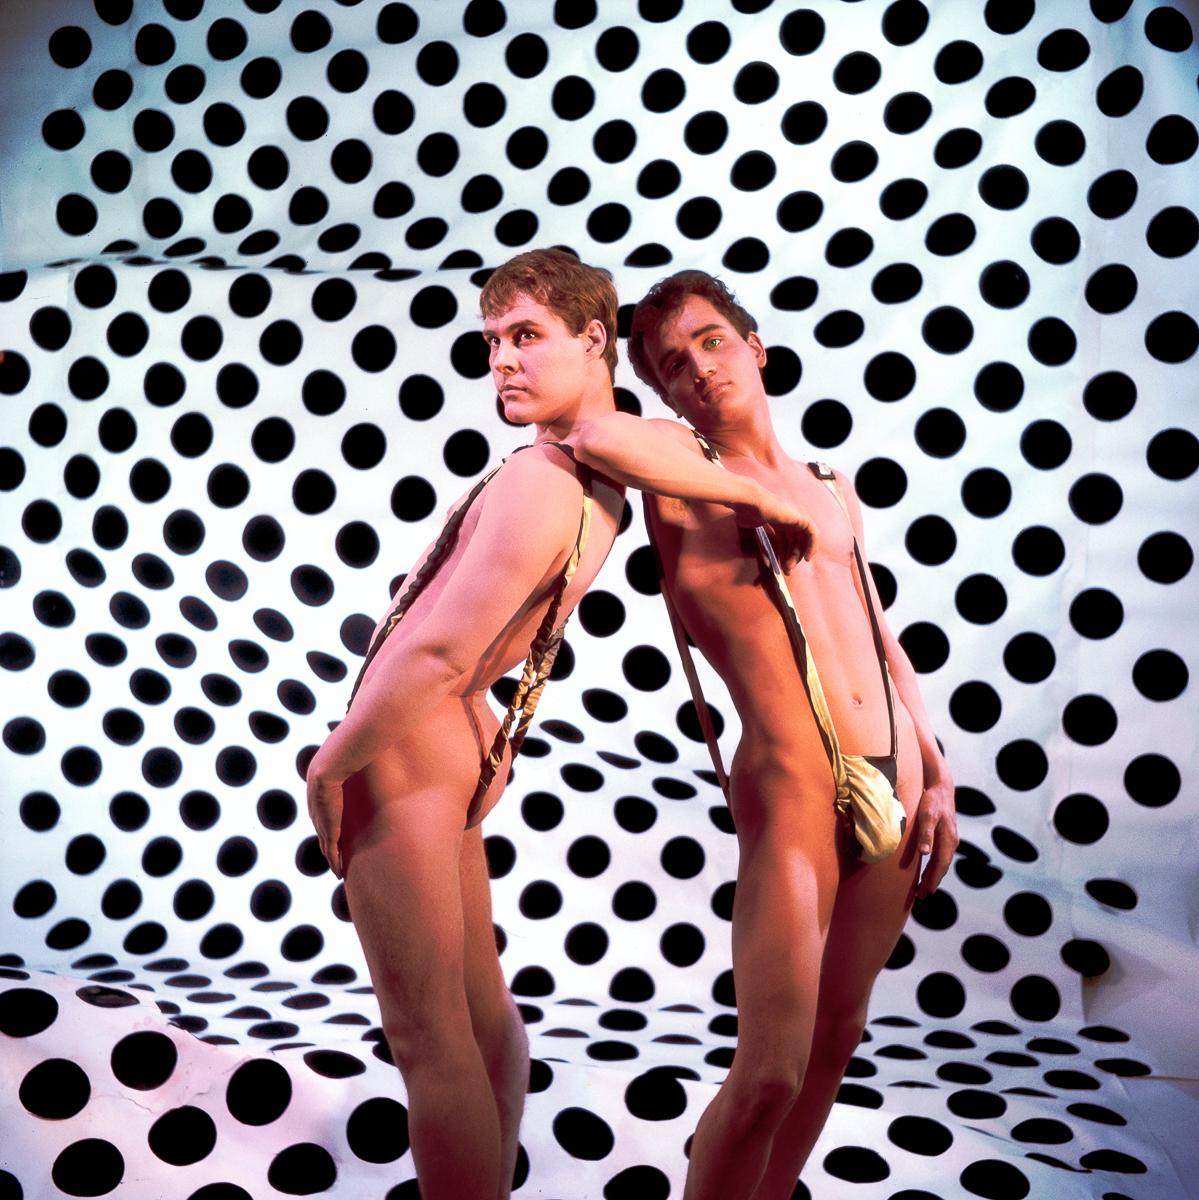 Nude Photograph James Bidgood - Op art